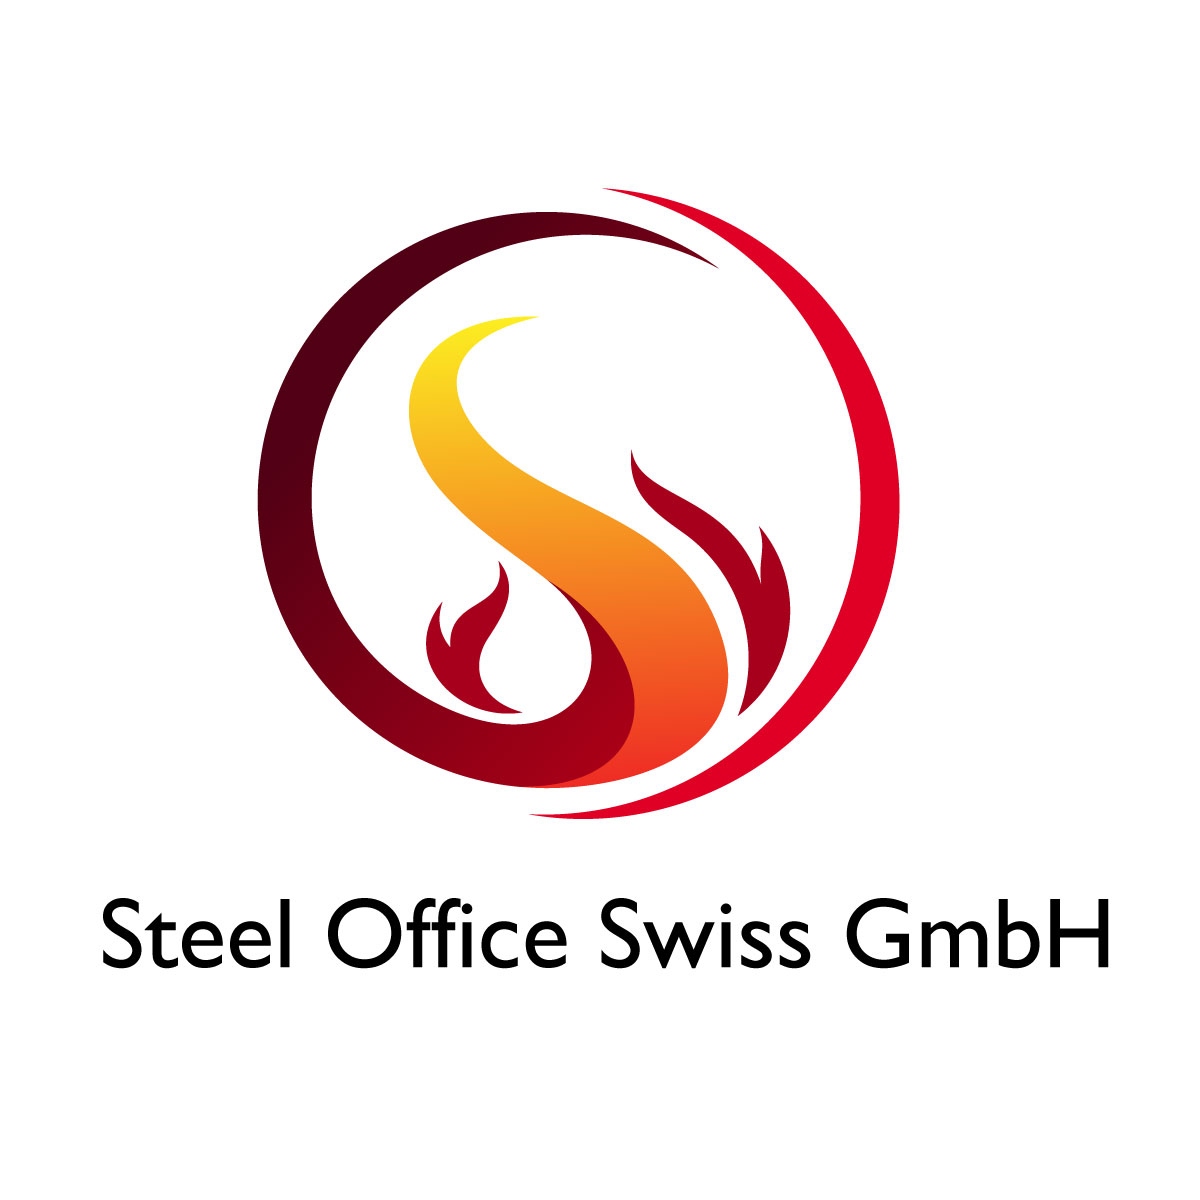 Steel Office Swiss GmbH